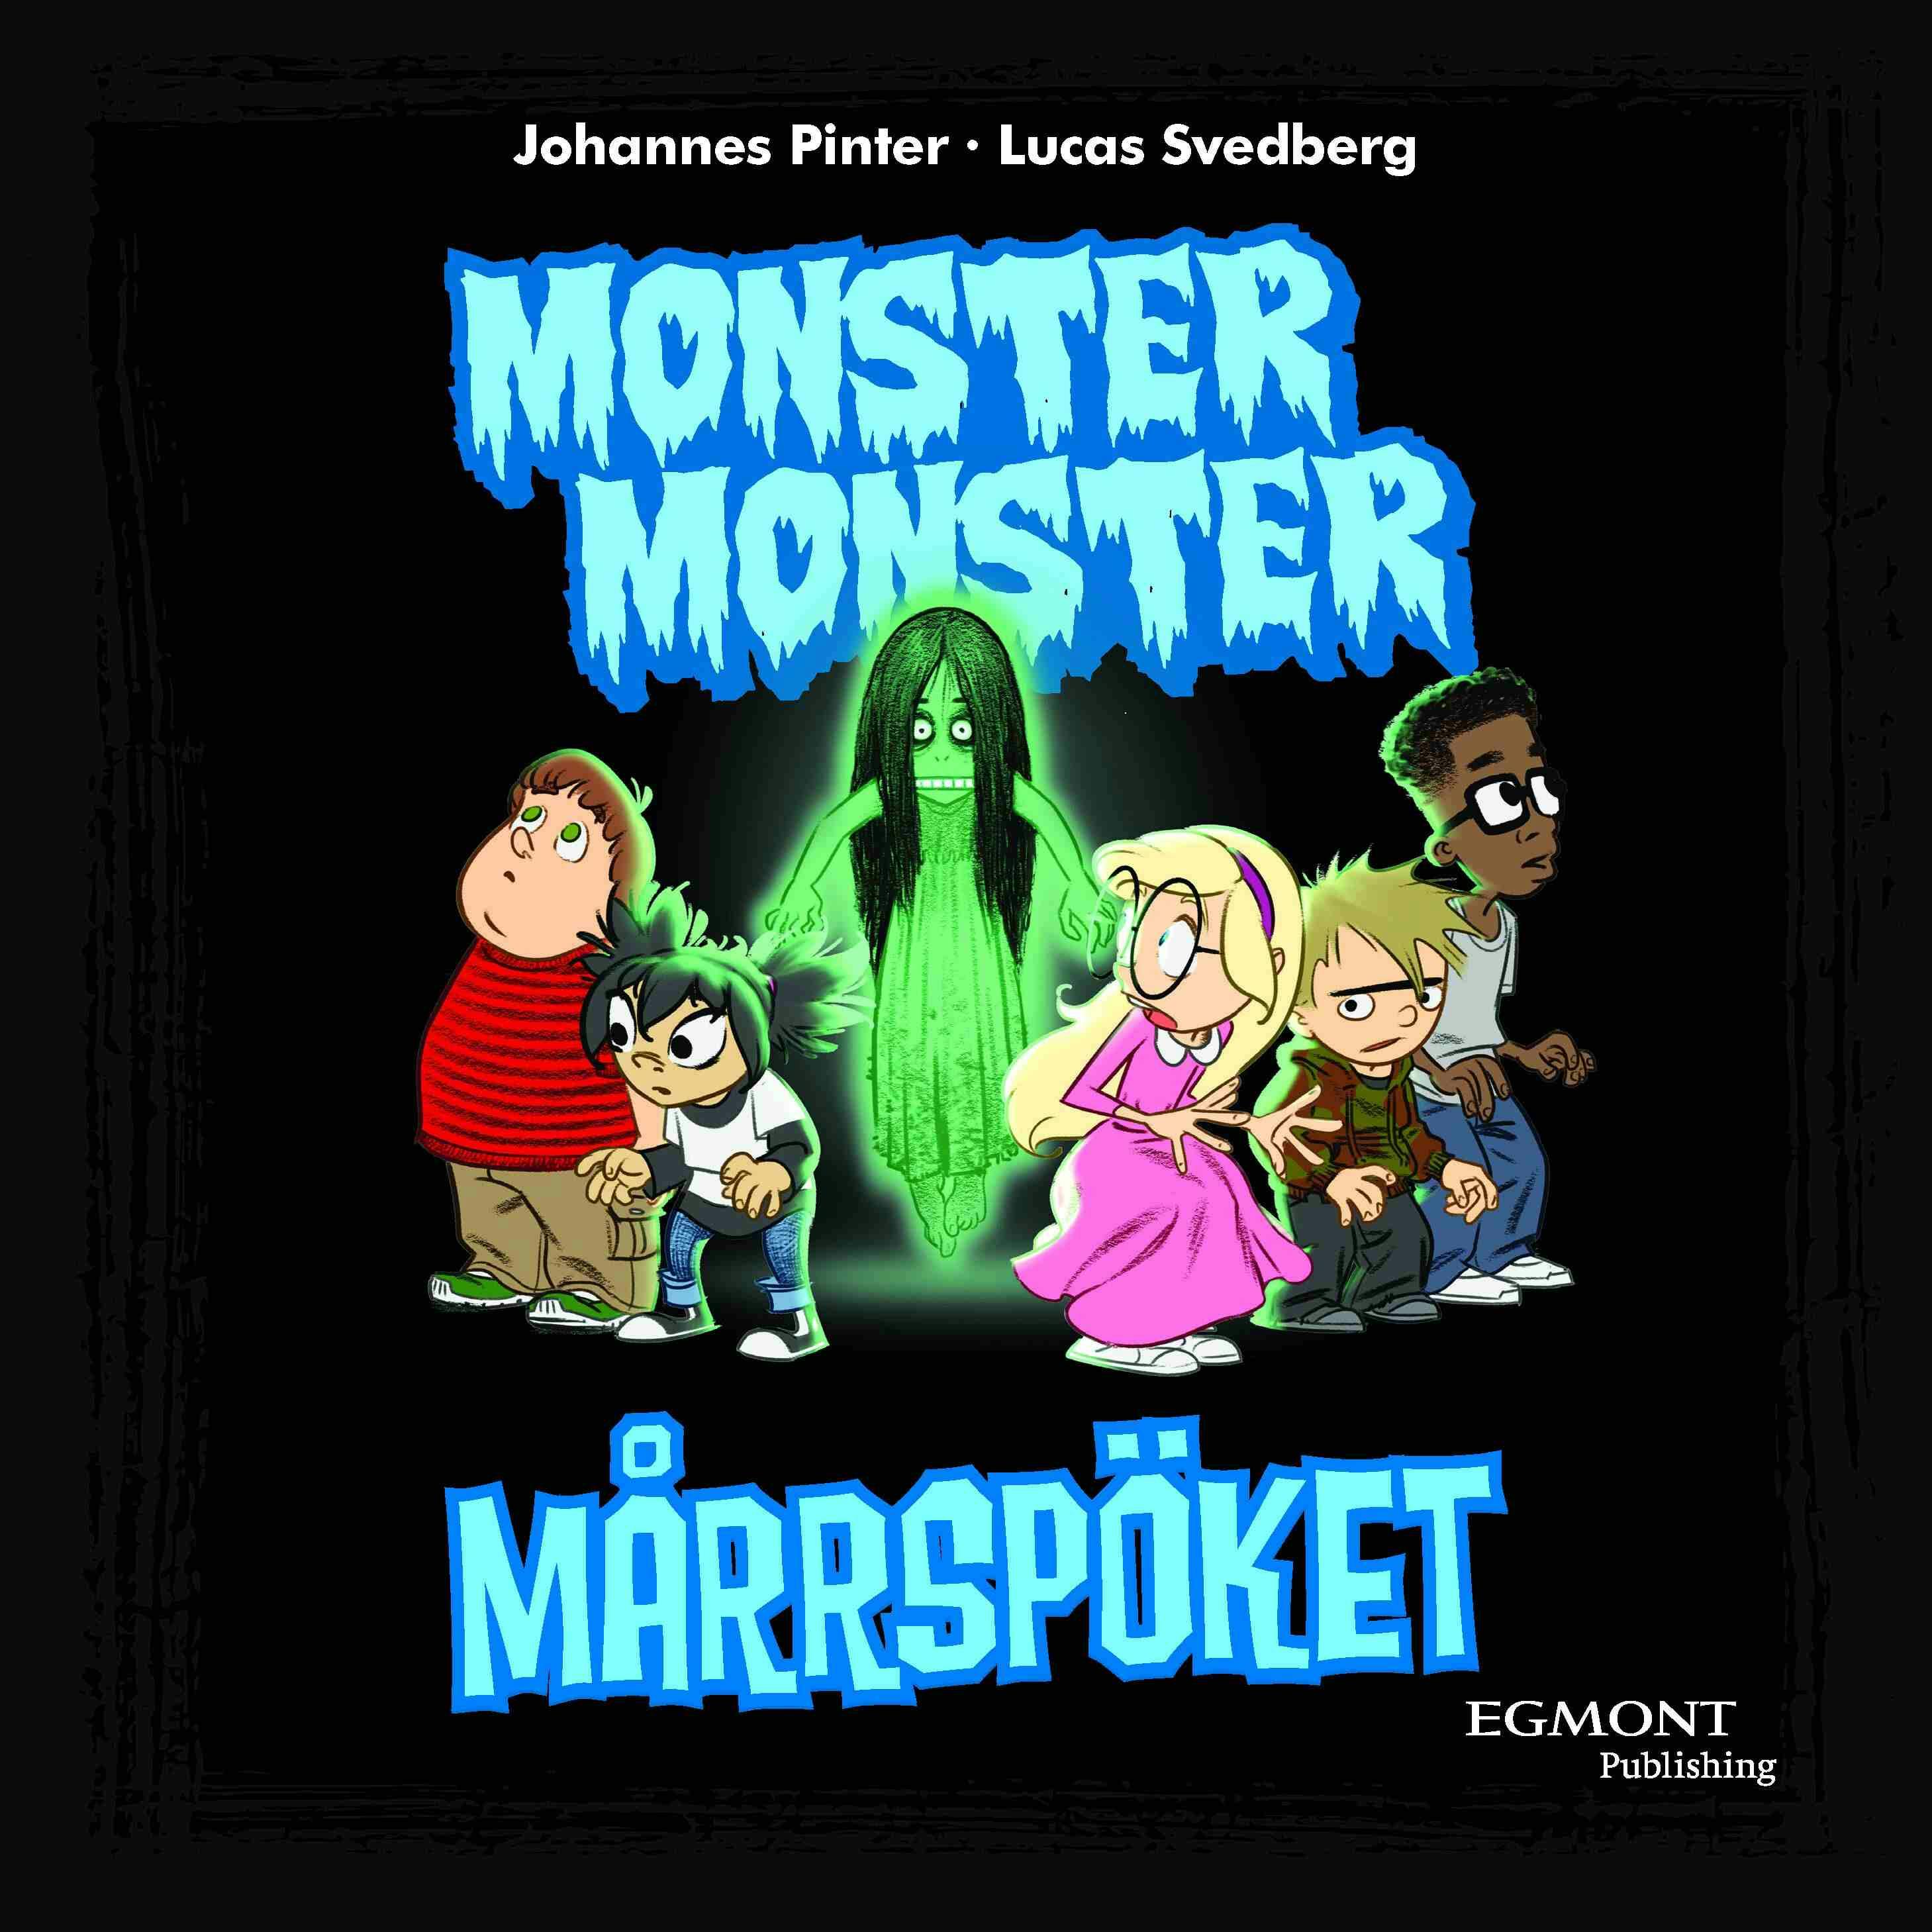 Monster monster 8 Mårrspöket - Johannes Pinter